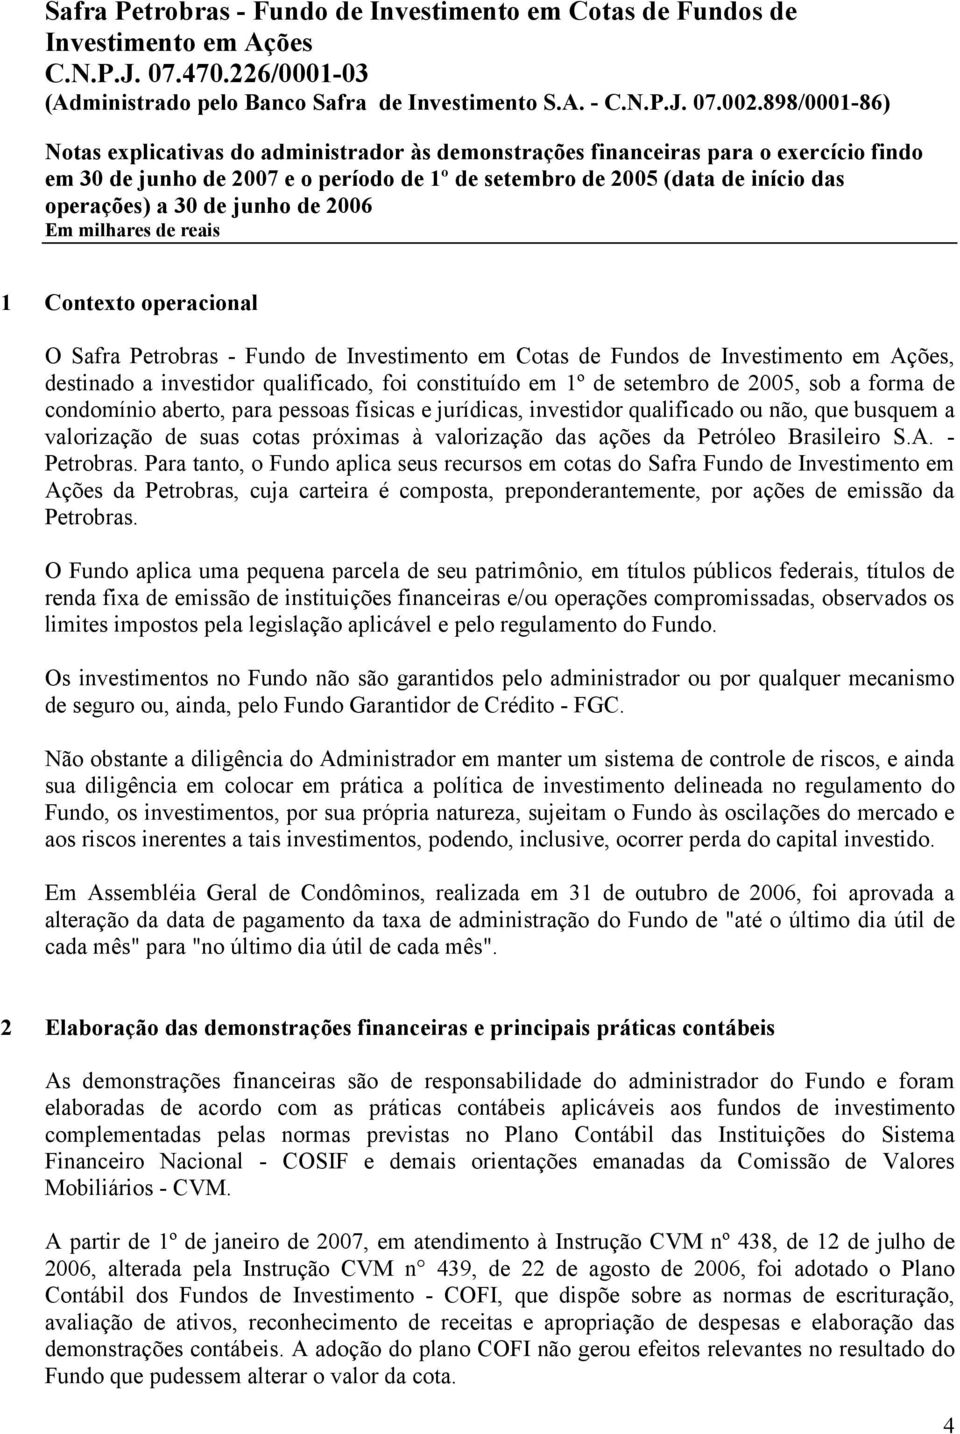 Para tanto, o Fundo aplica seus recursos em cotas do Safra Fundo de Investimento em Ações da Petrobras, cuja carteira é composta, preponderantemente, por ações de emissão da Petrobras.